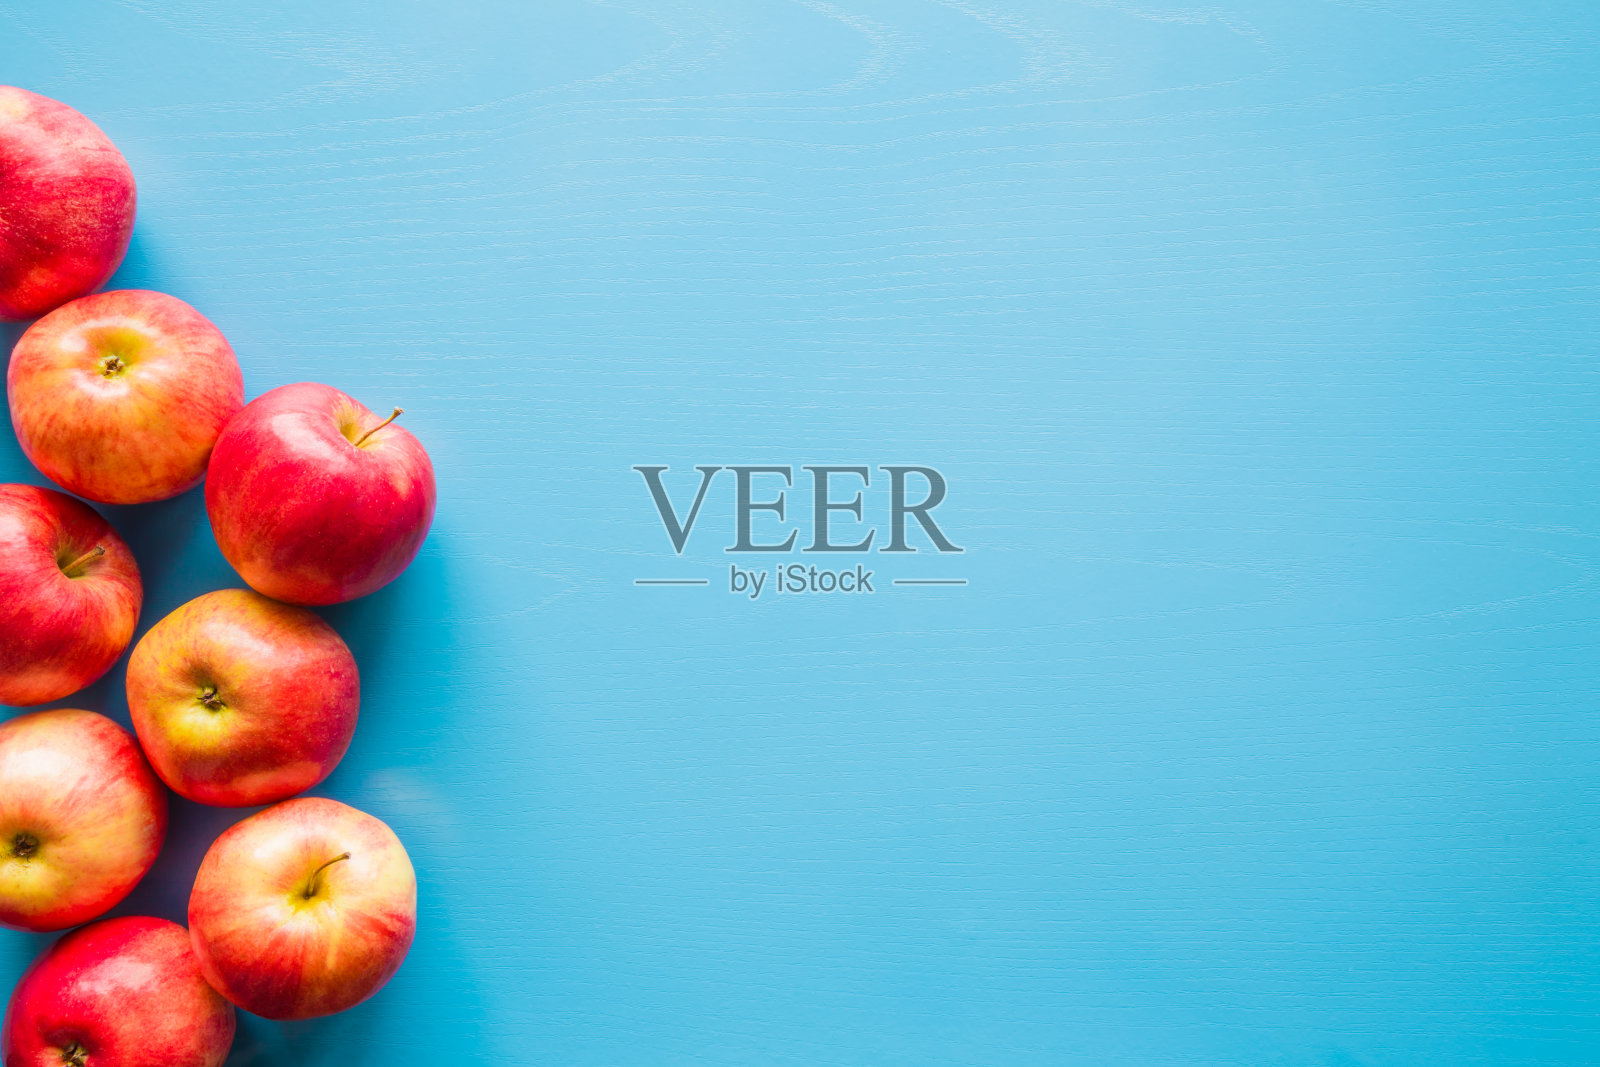 美丽，新鲜，彩色的苹果在蓝色的背景。健康甜食的概念。模拟水果提供作为广告或网络背景，或其他想法。文字或标识的空白位置。照片摄影图片